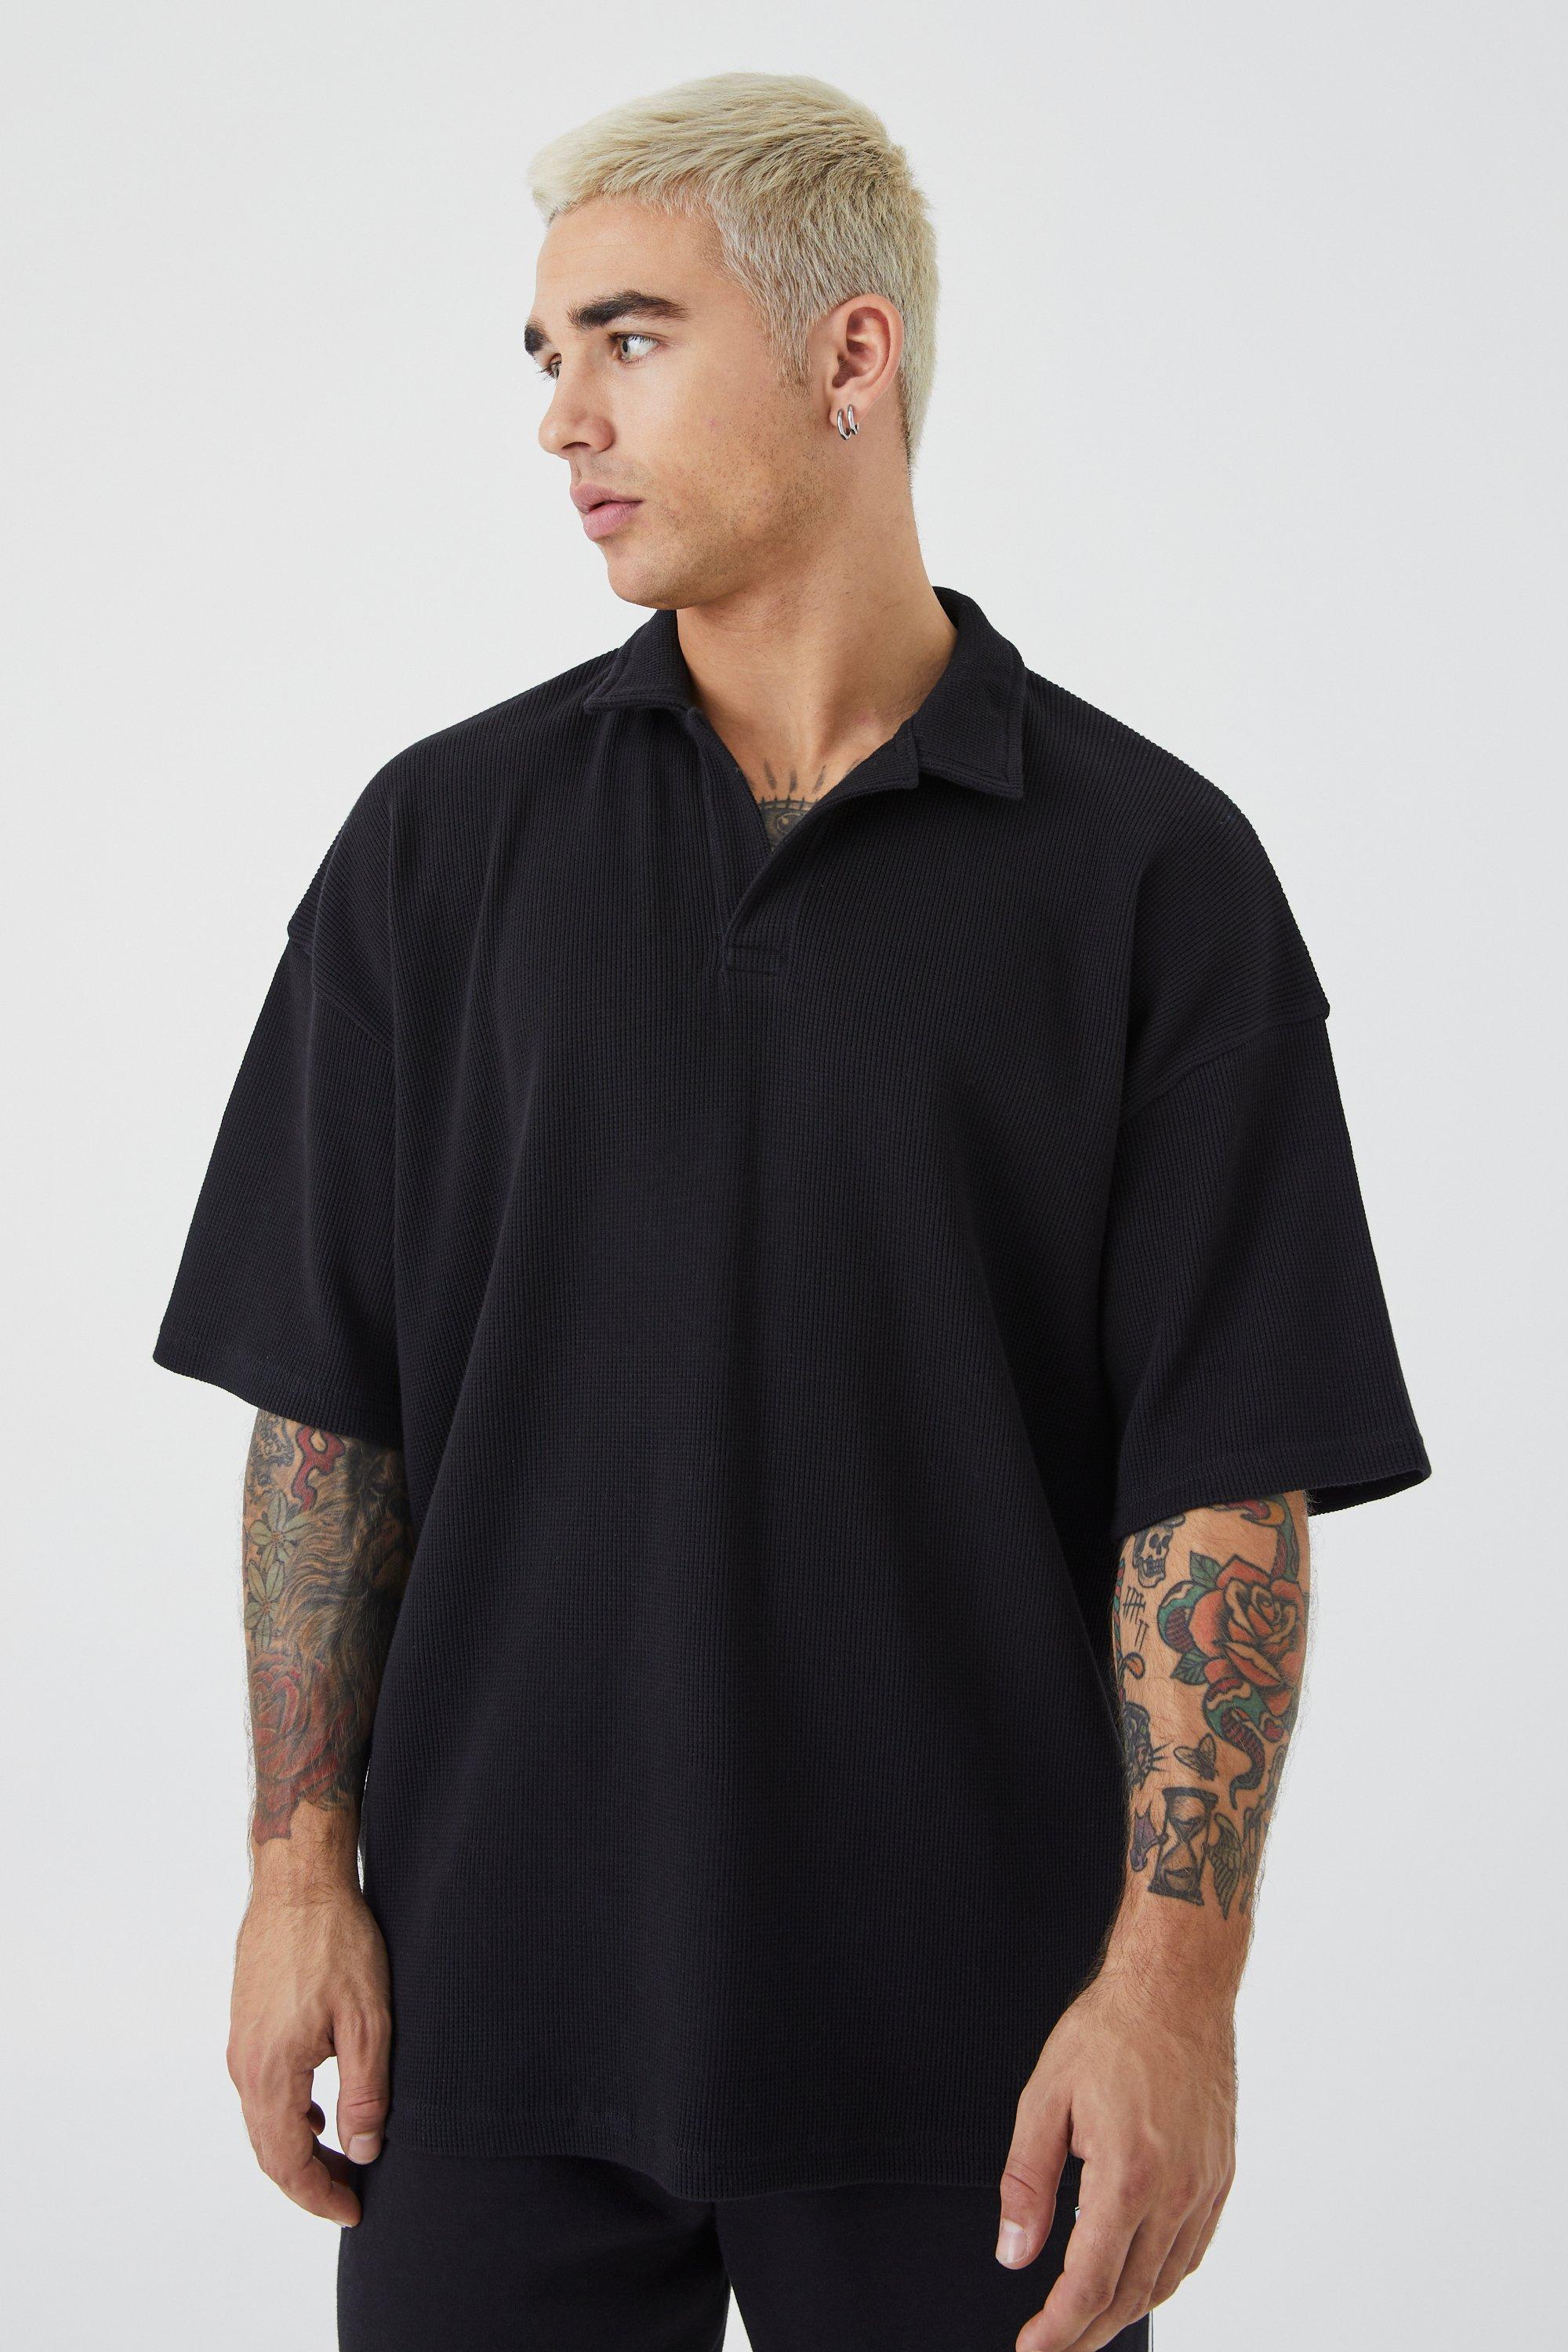 BoohooMAN Oversized Revere Collar Short Sleeve Polo in Black for Men